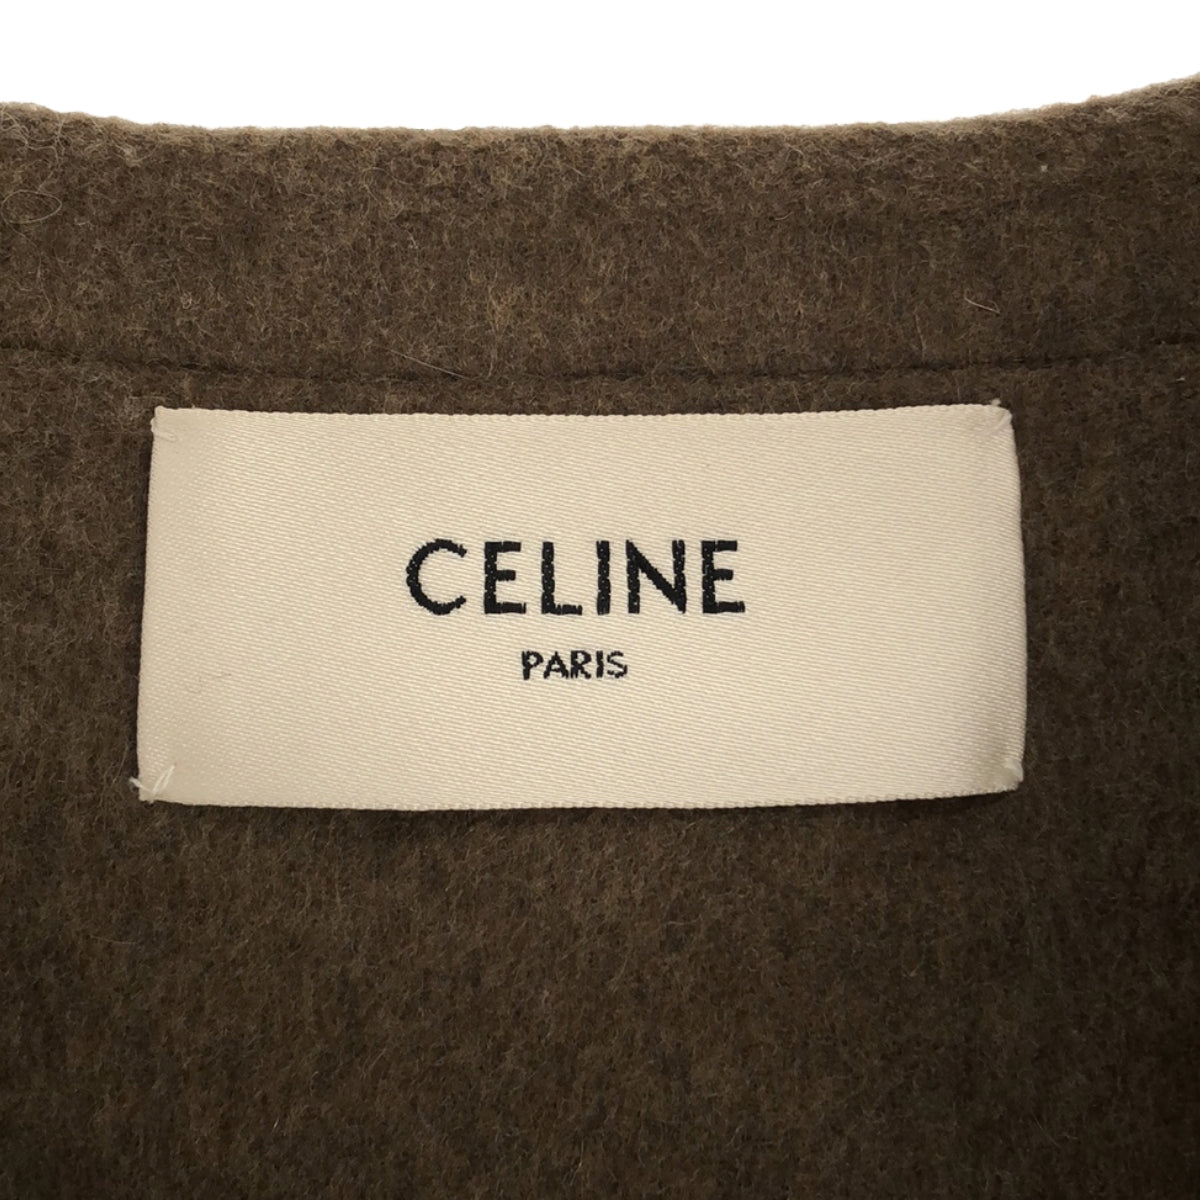 CELINE / セリーヌ | cashmere 100% / カシミヤ レザー切替 ノーカラー サドラーコート | 40 | レディース